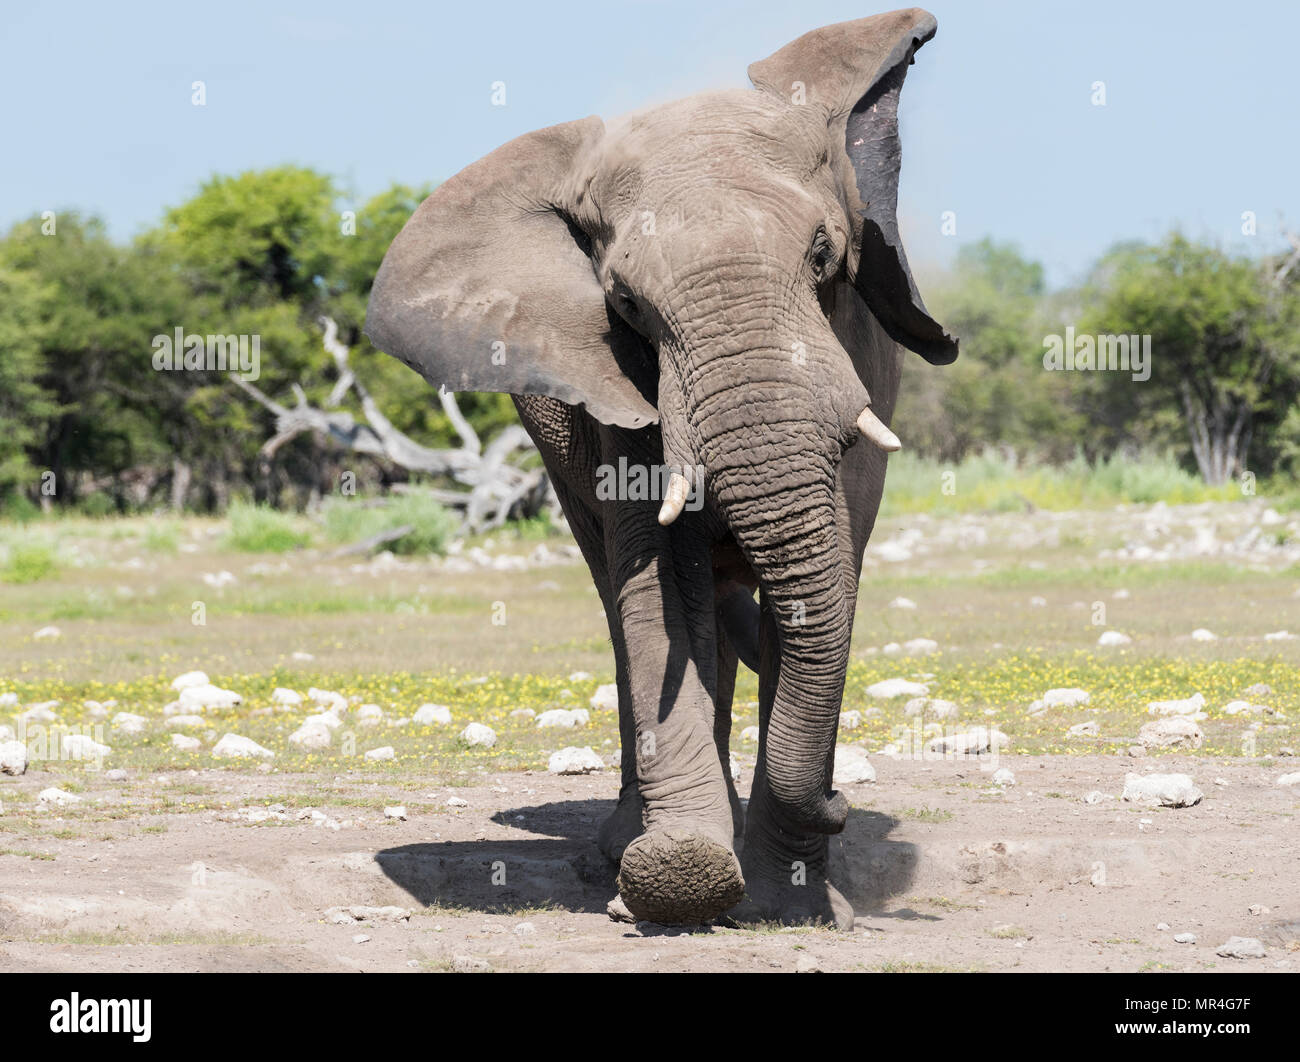 African Elephant Charging Towards Camera. Etosha National Park, Namibia. Stock Photo